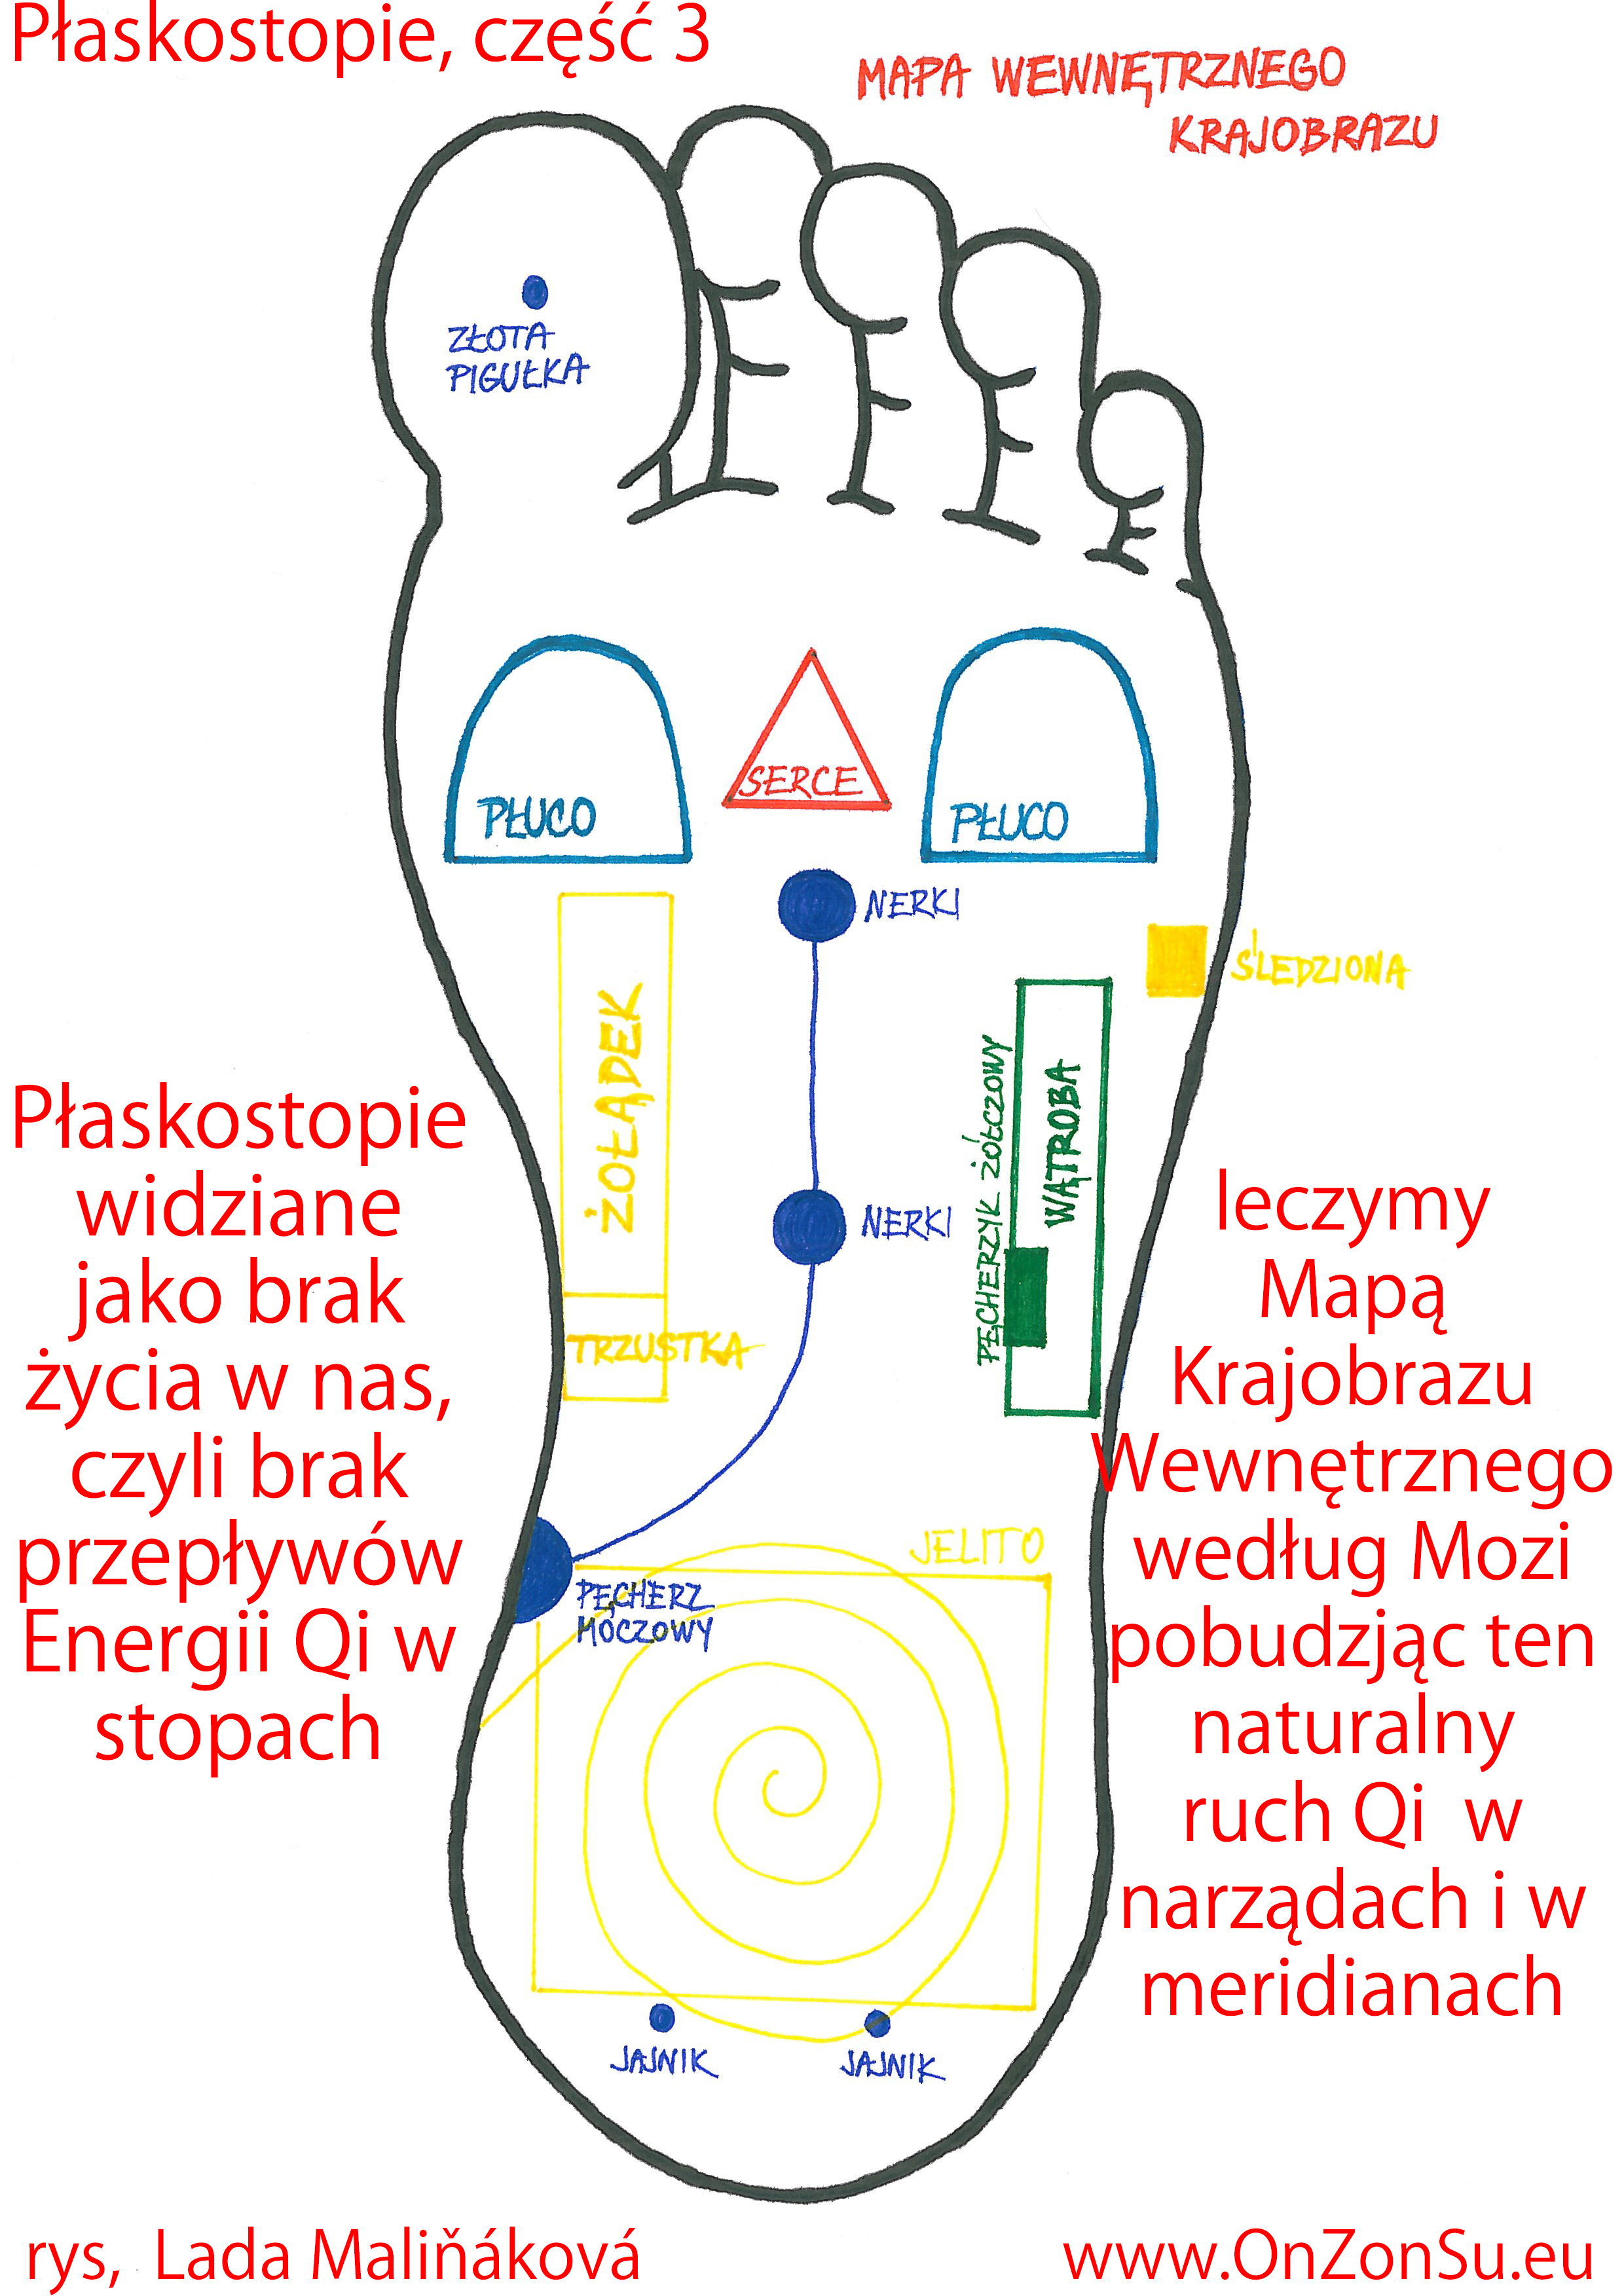 Kurs masażu stóp On Zon Su, Szkolenia refleksologii stóp - Płaskostopie, część 3 - masaż według  Mapy Krajobrazu Wewnętrznego mistrza Mozi Plaskostopie_3_MEM.jpg